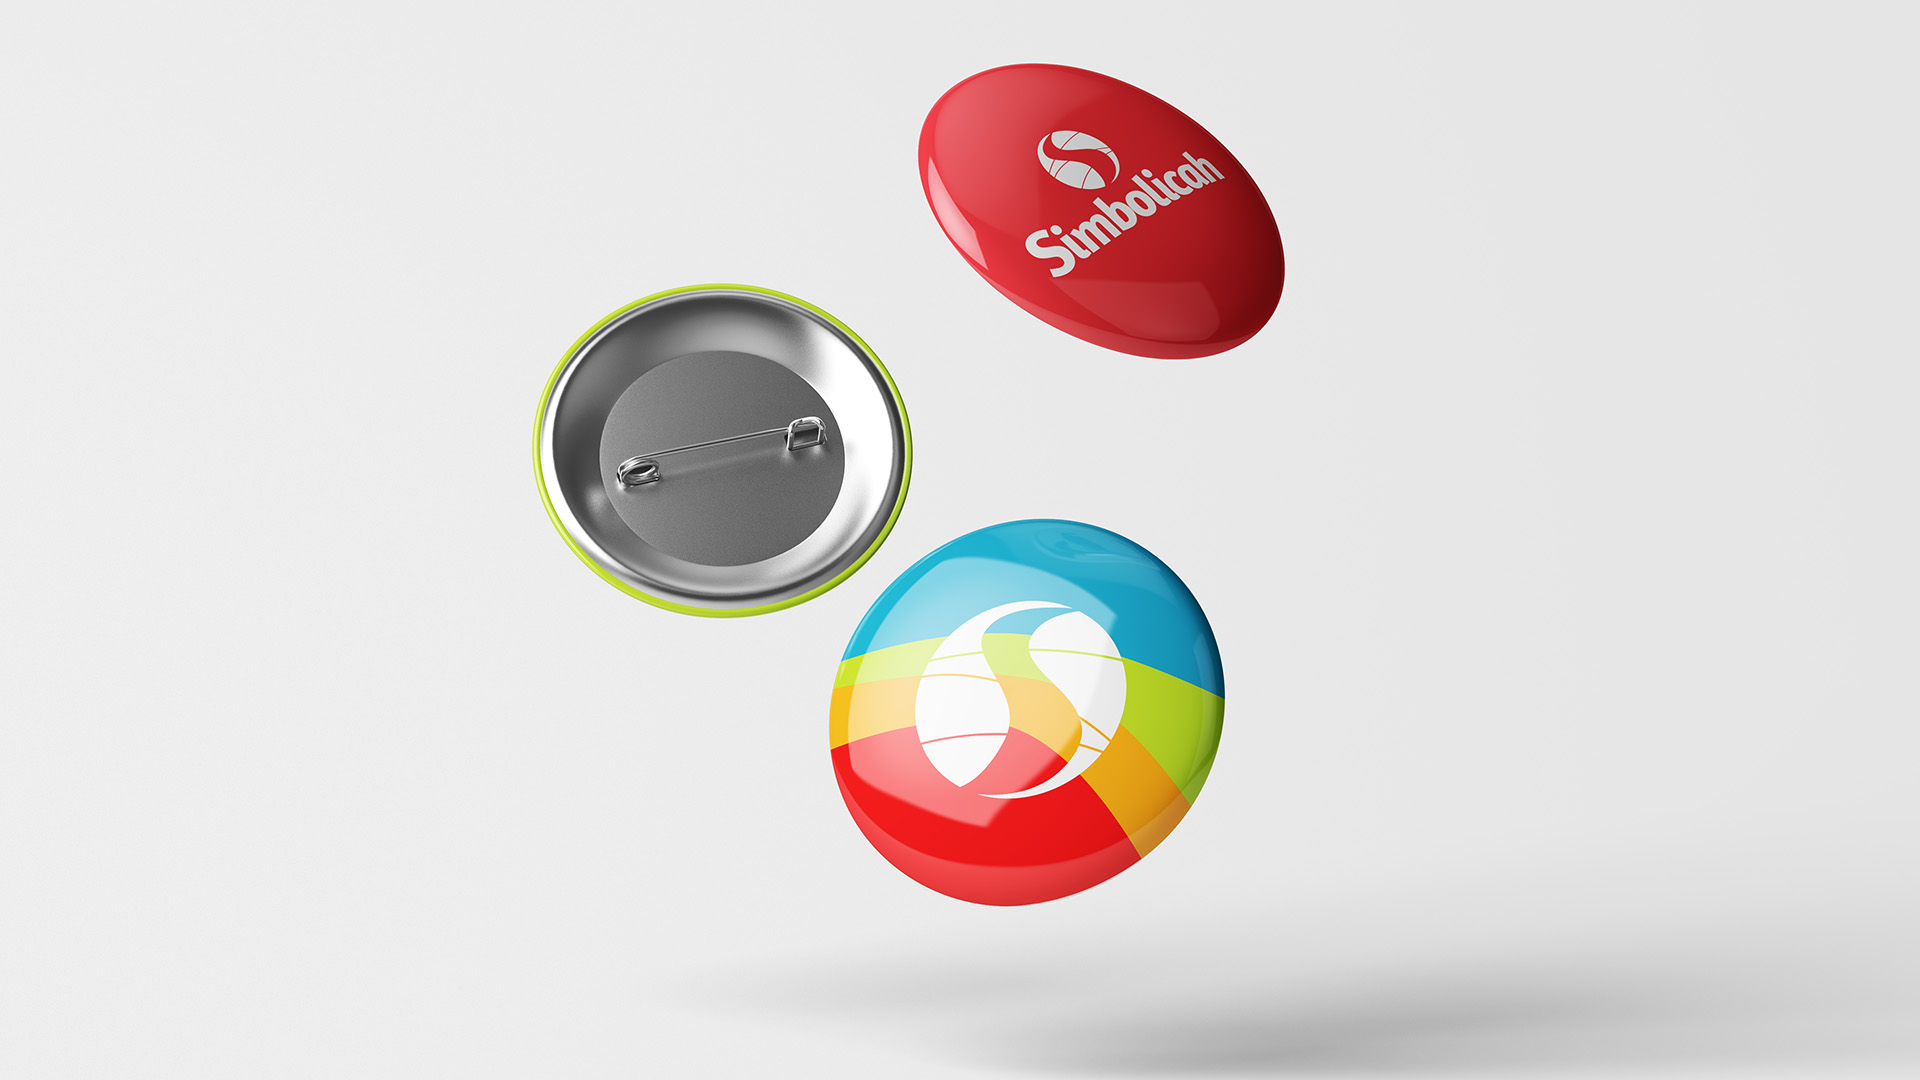 Imagem de bottons com identidade visual Simbolicah.